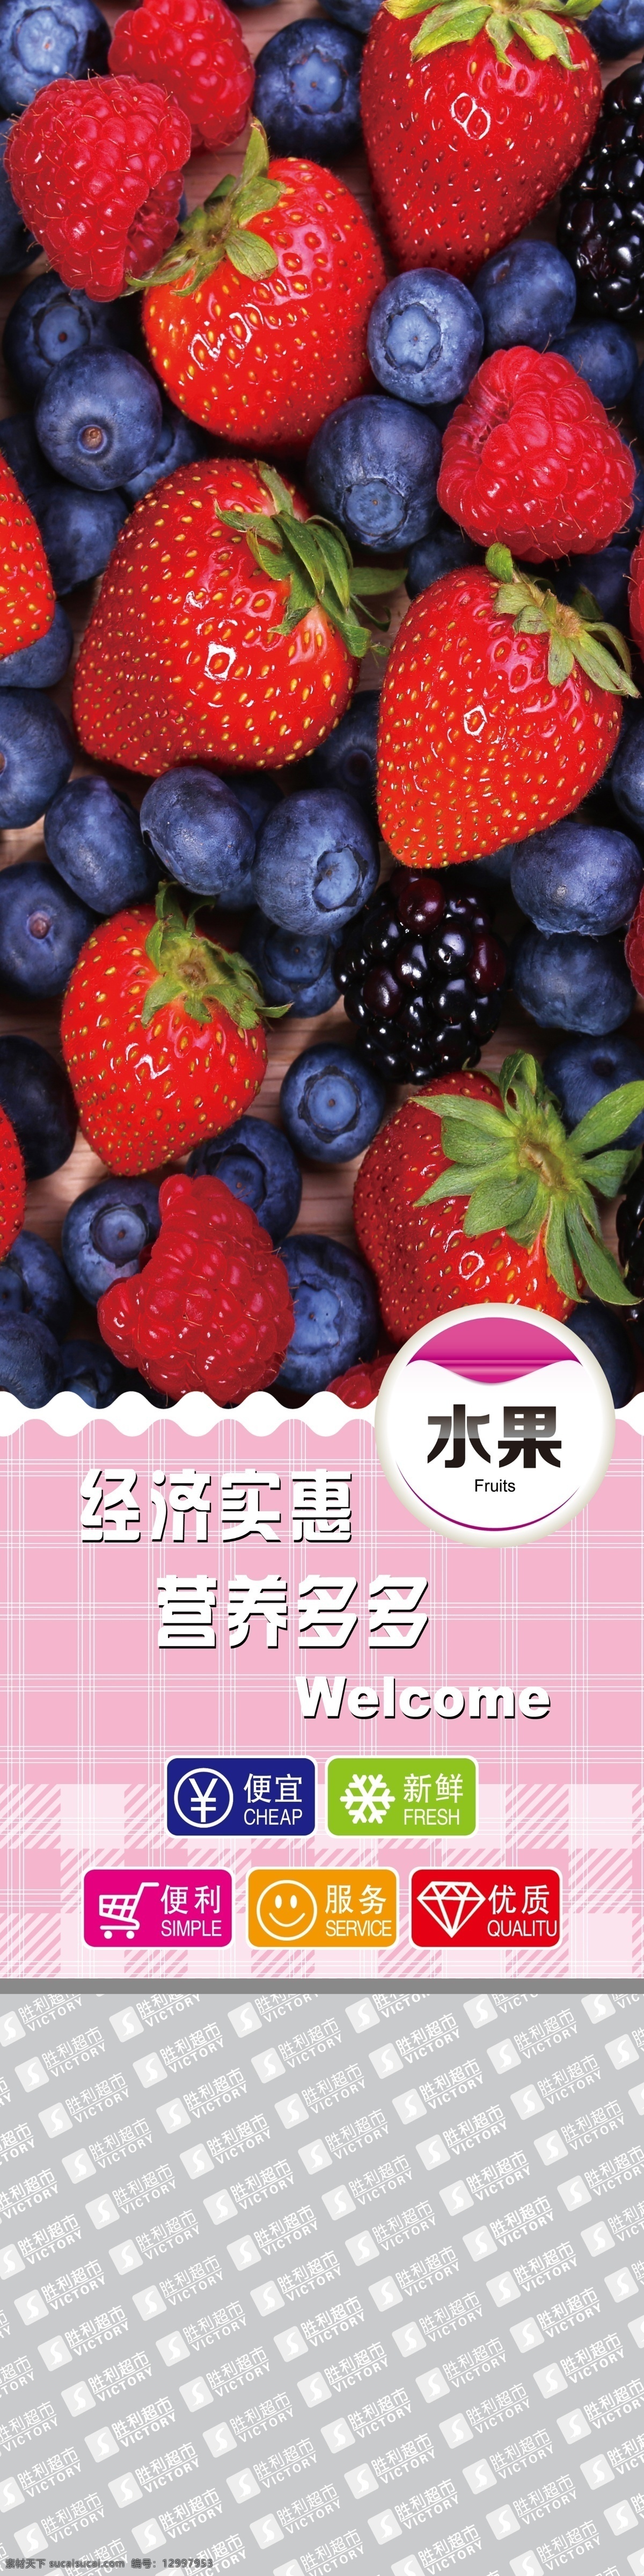 水果 包住 草莓 超市海报 超市宣传 超市柱子 粉色 蓝莓 水果区 水果包住 超市包住 称台区 原创设计 其他原创设计